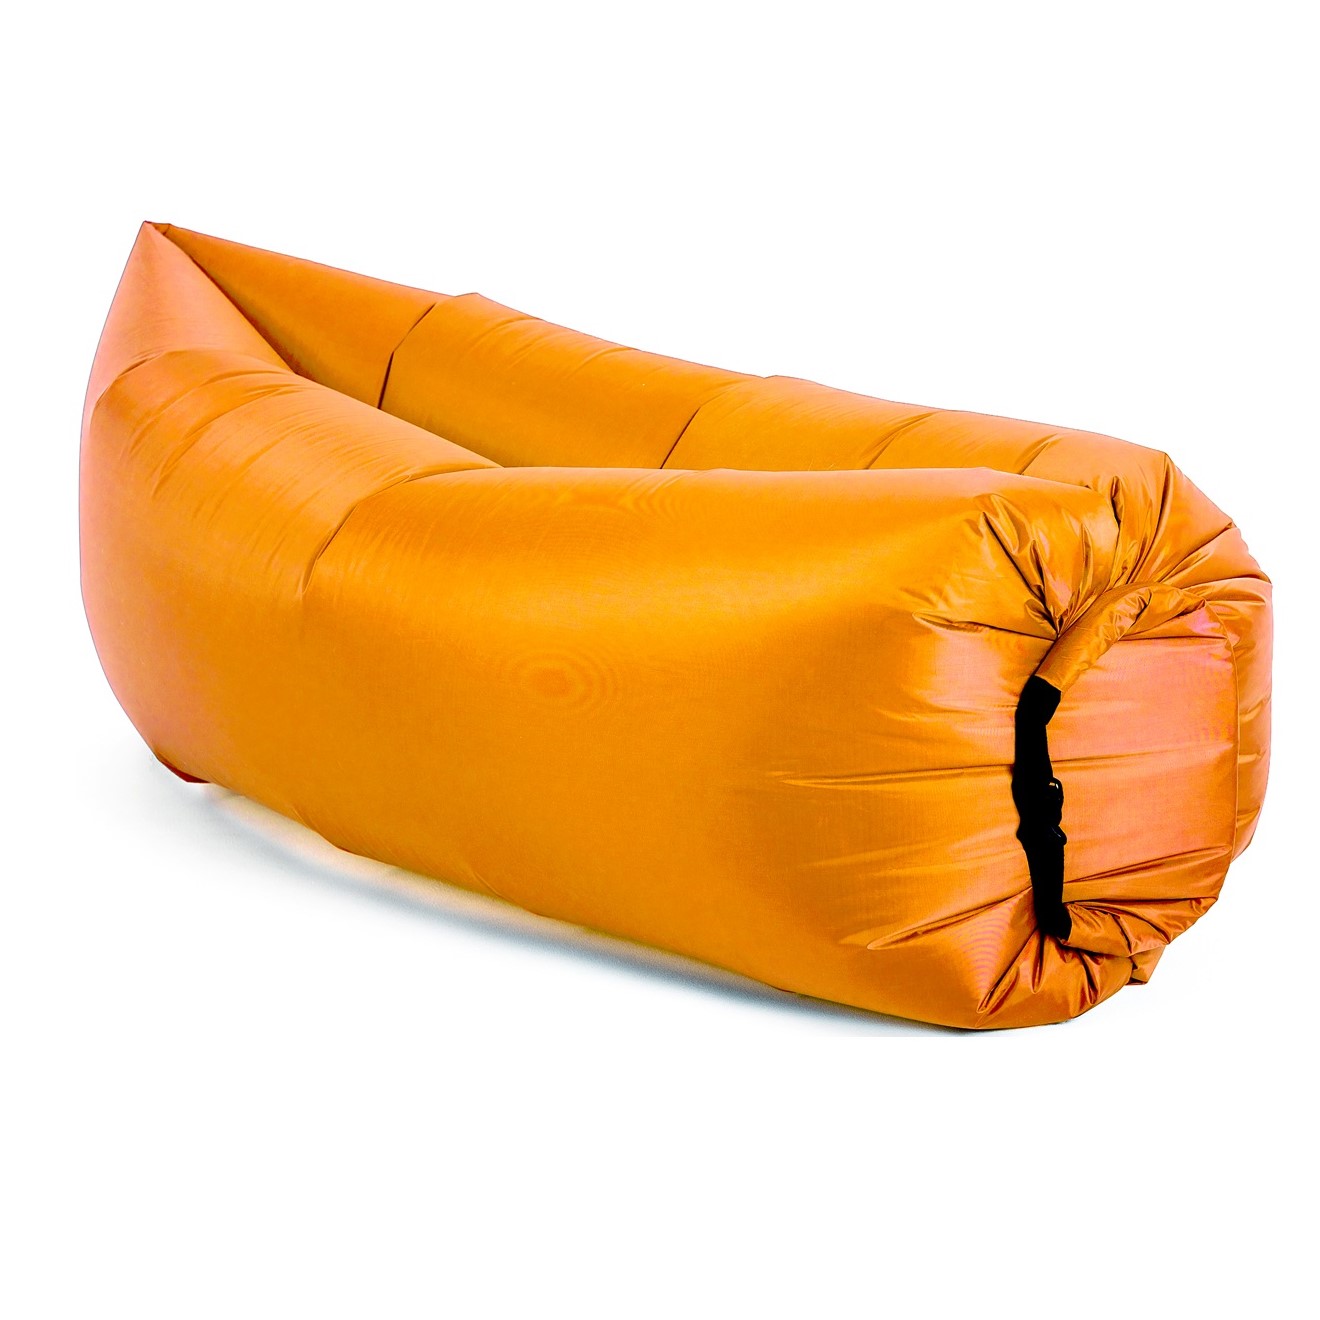 Диван надувной Биван Оригинальный, оранжевый надувной диван биван биван 2 0 хаки